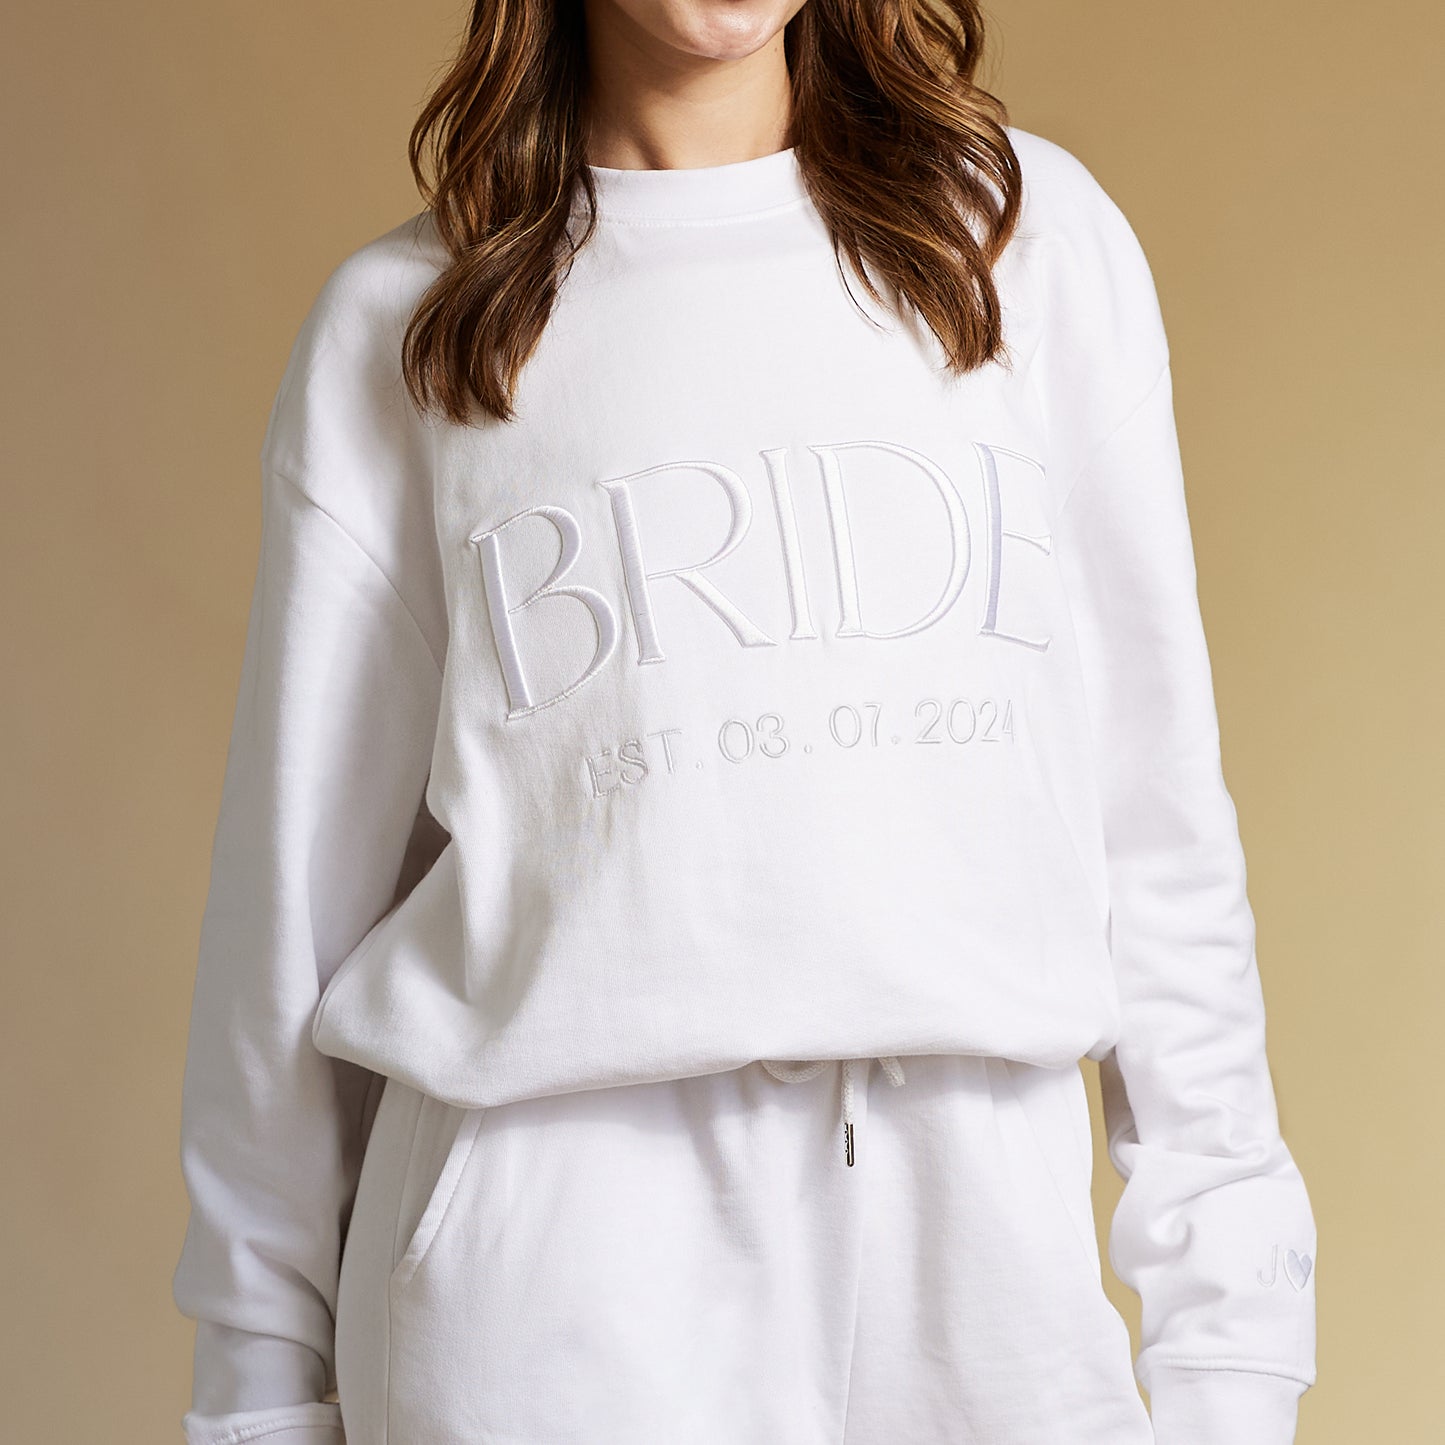 Embroidered BRIDE Sweatshirt - White